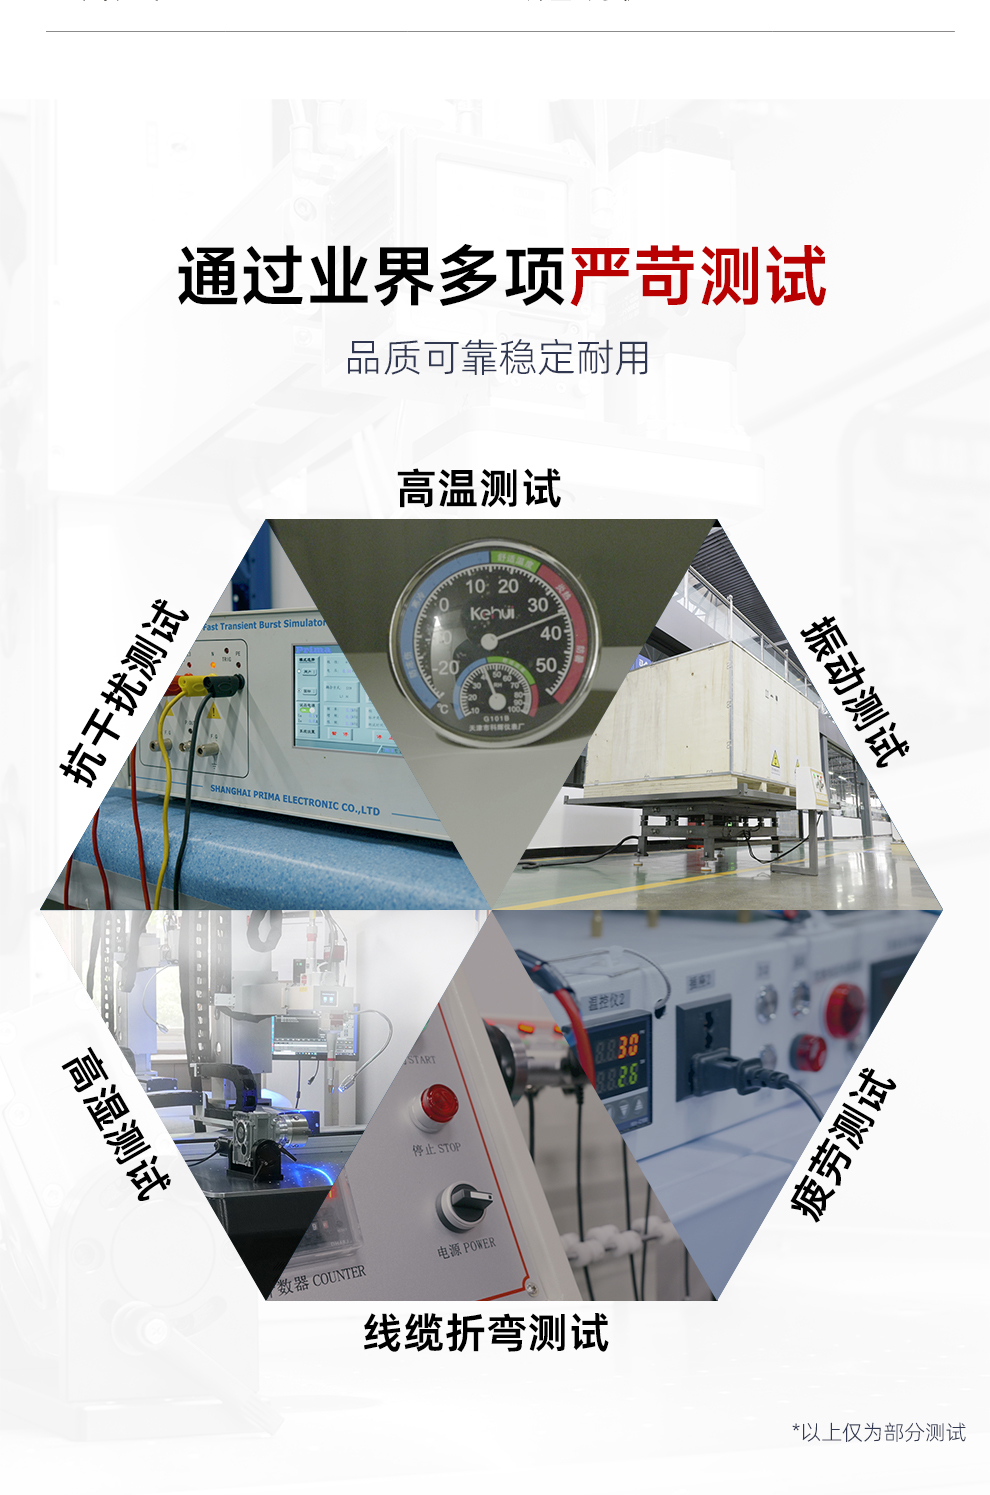 【待审】内贸-平台自动激光焊接机--详情O0520牛力_09.jpg